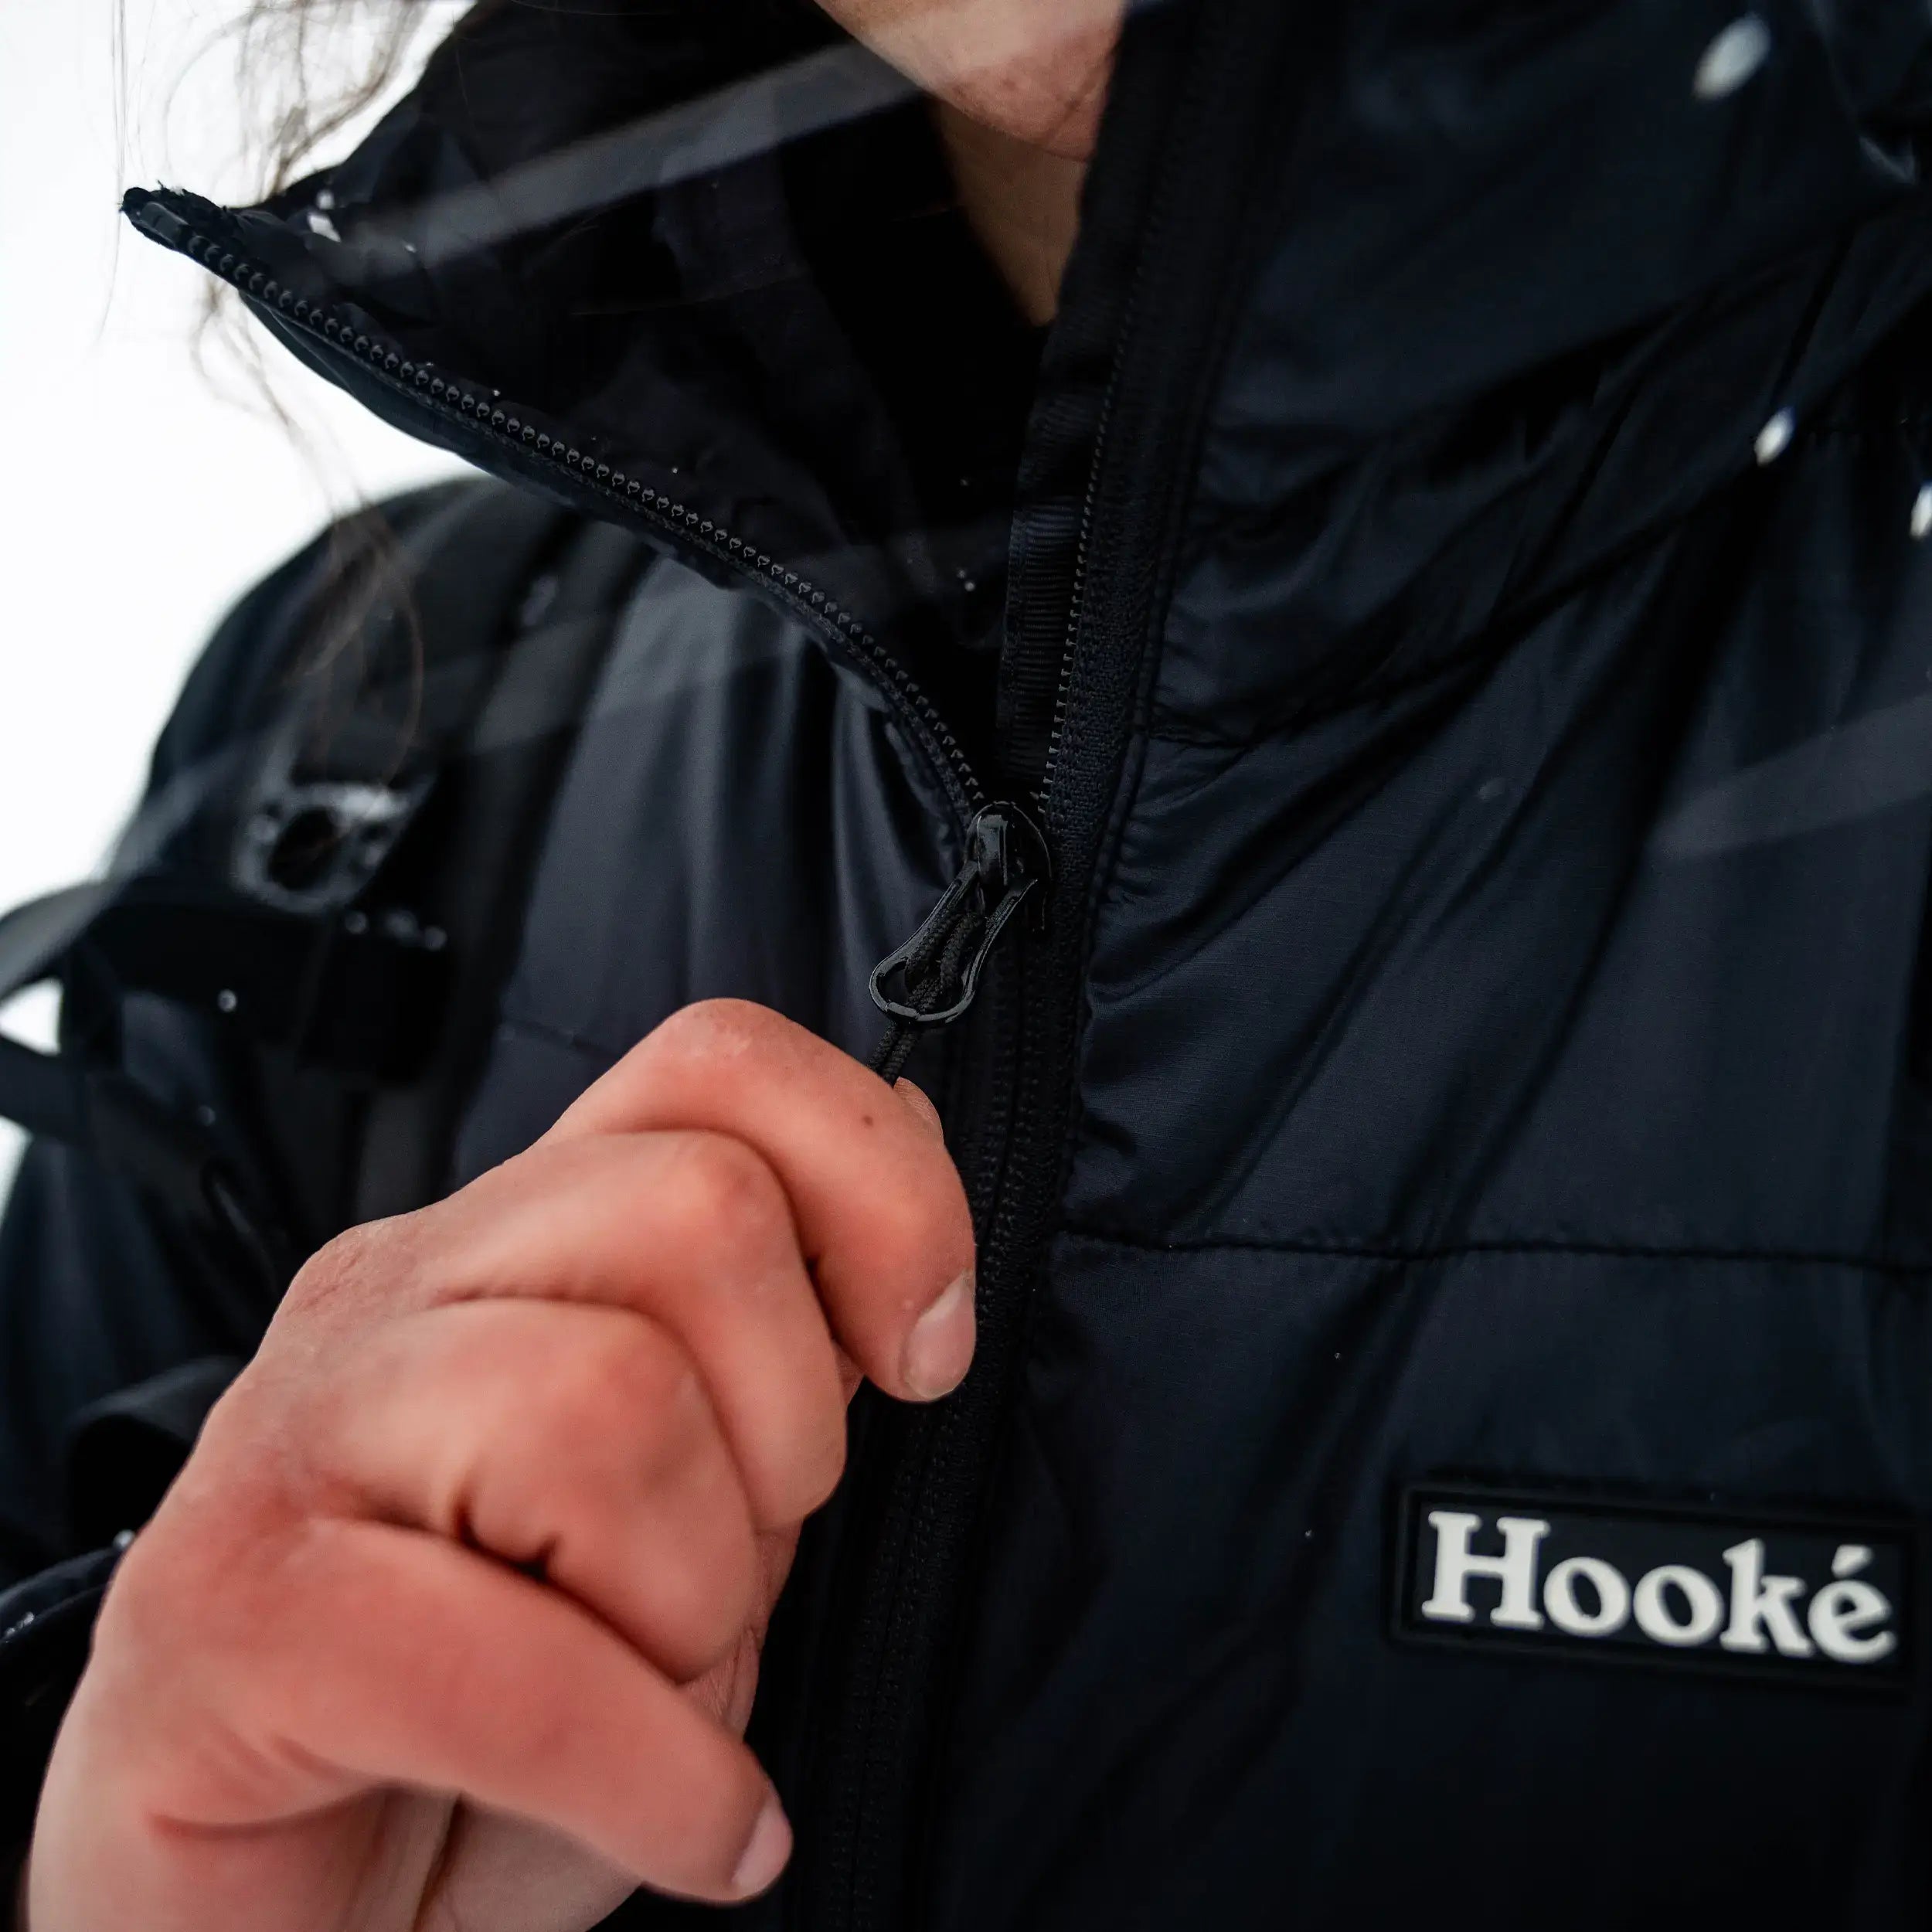 W's Lightweight Insulated Hood Jacket - Hooké